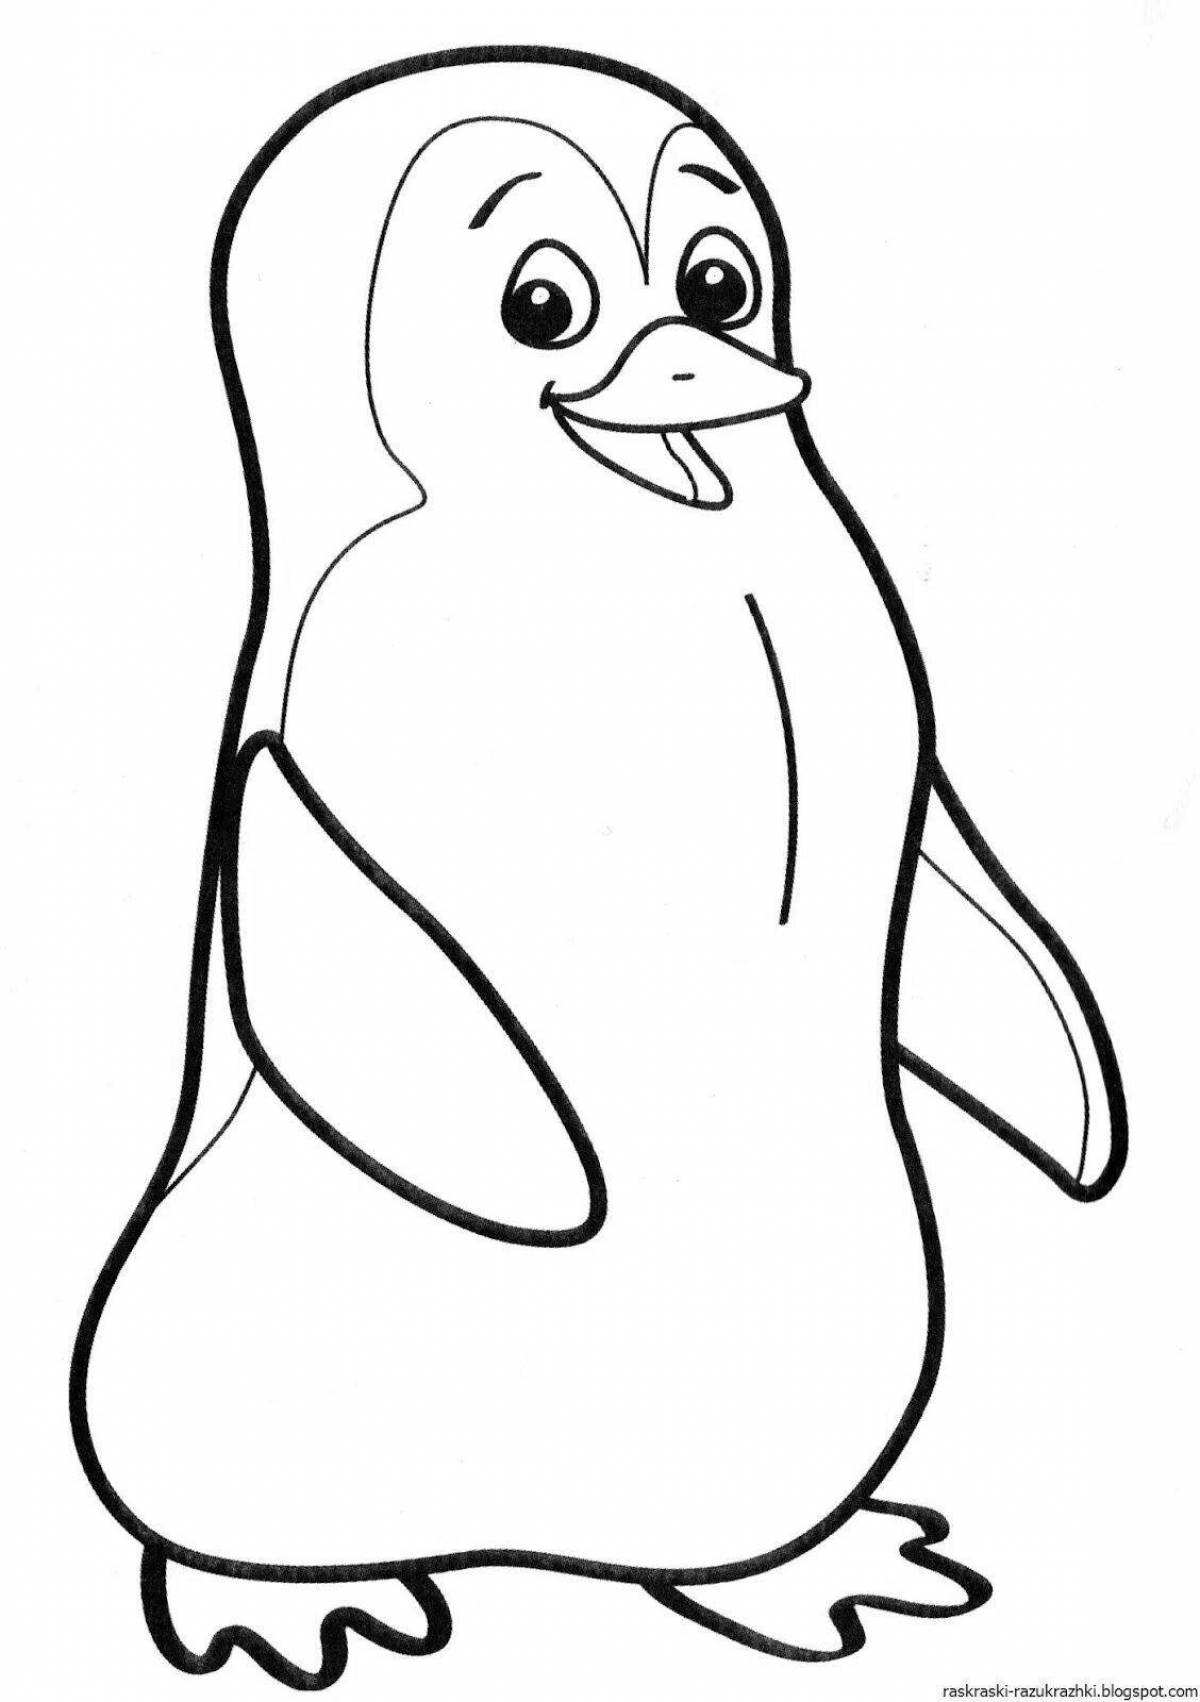 Penguin template #3